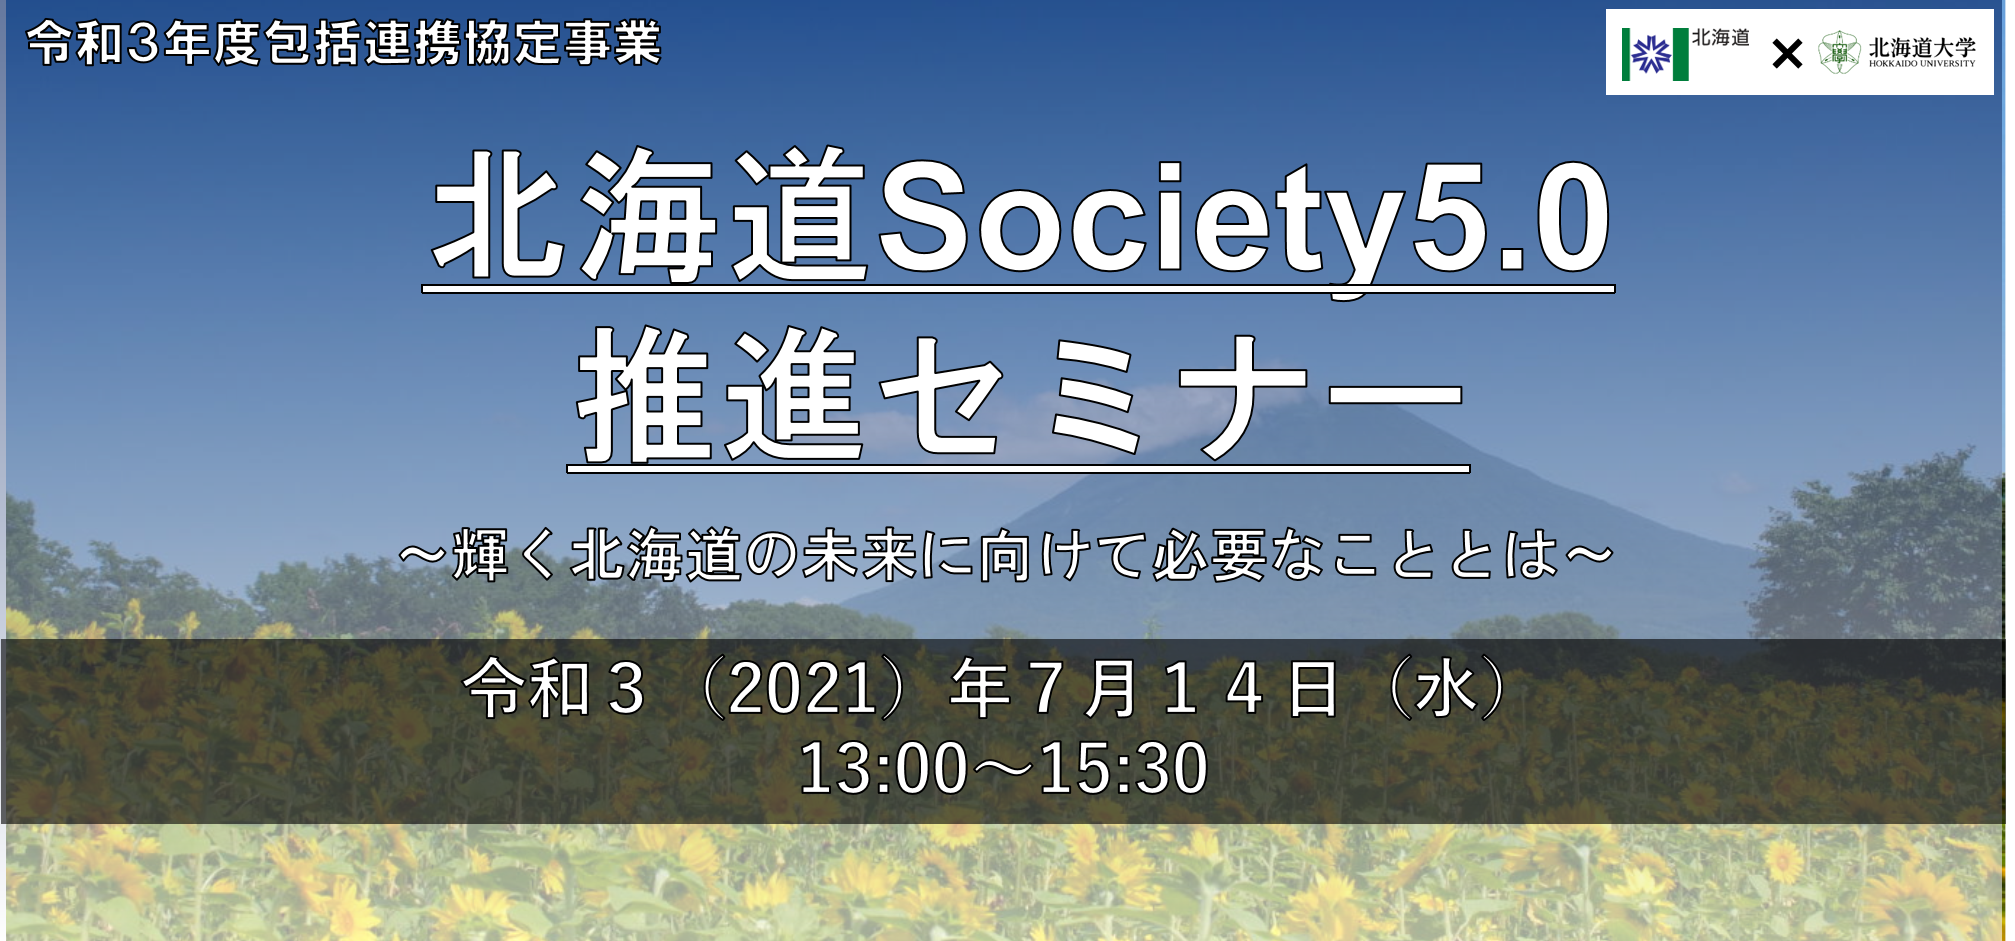 北海道Society5.0推進セミナー